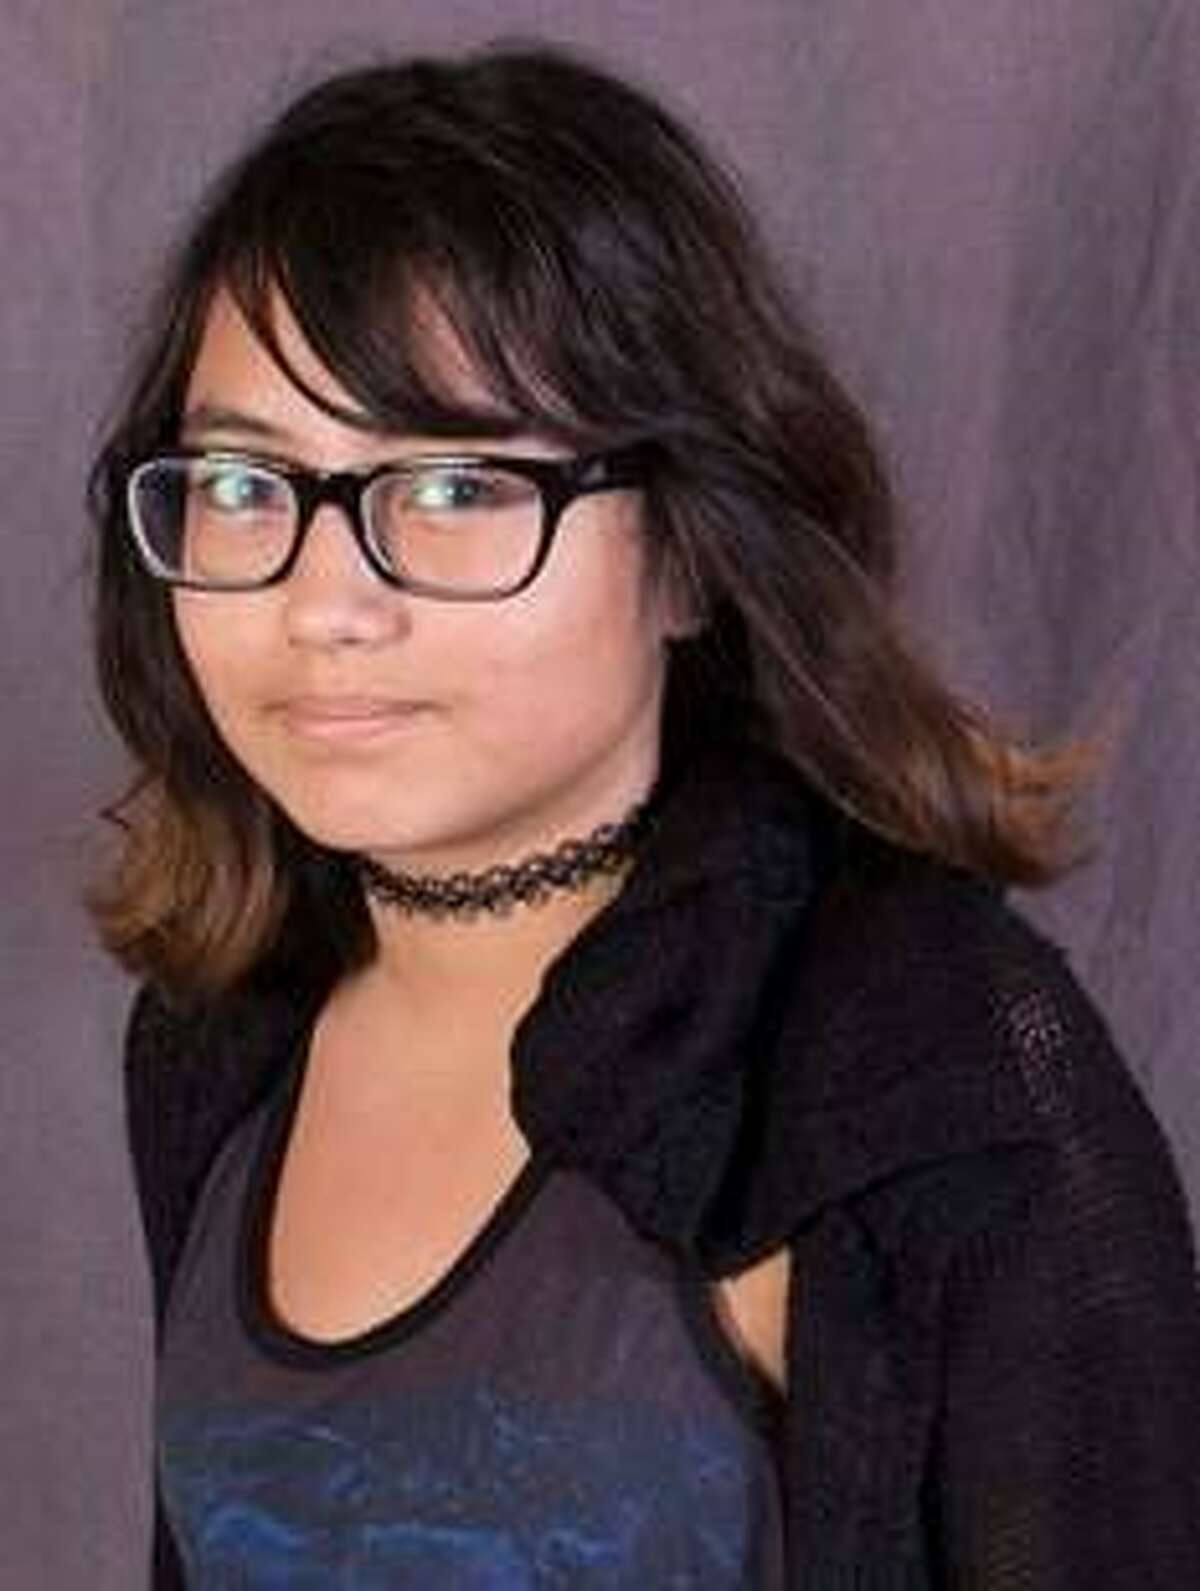 Missing girl Adriana Coronado is a freshman at Mayde Creek High School in Katy ISD.